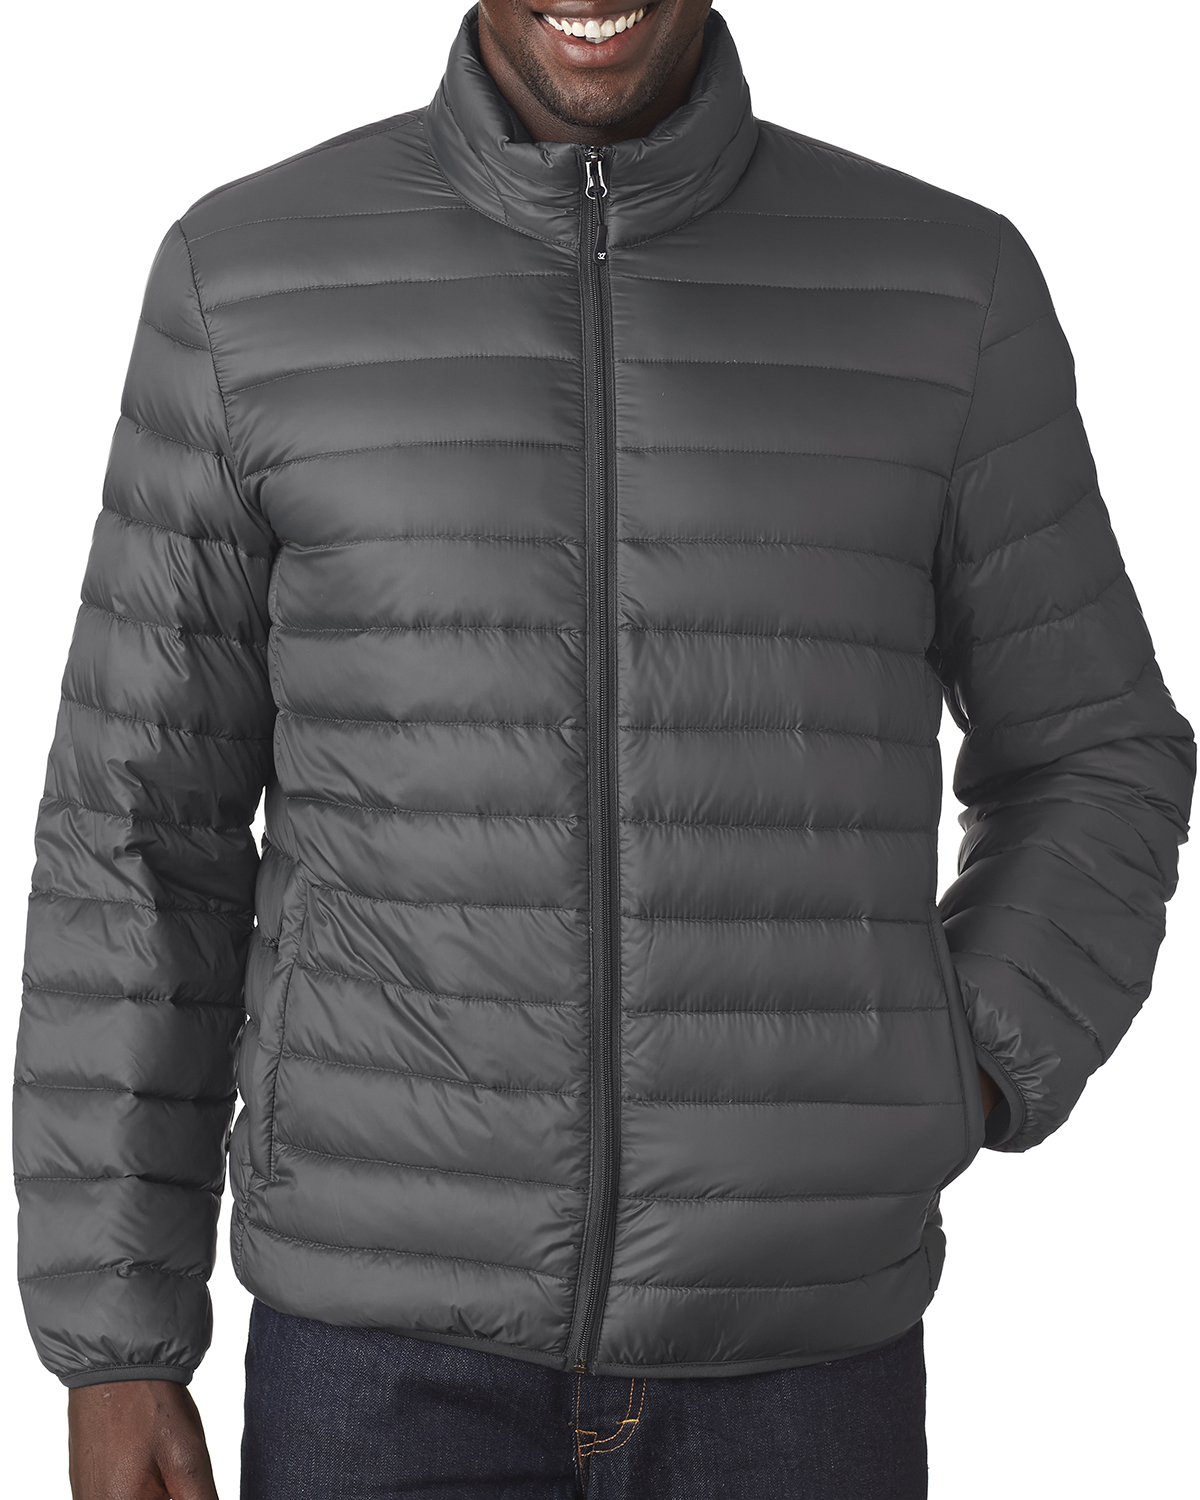 Weatherproof 15600 - Men's Packable Down Jacket